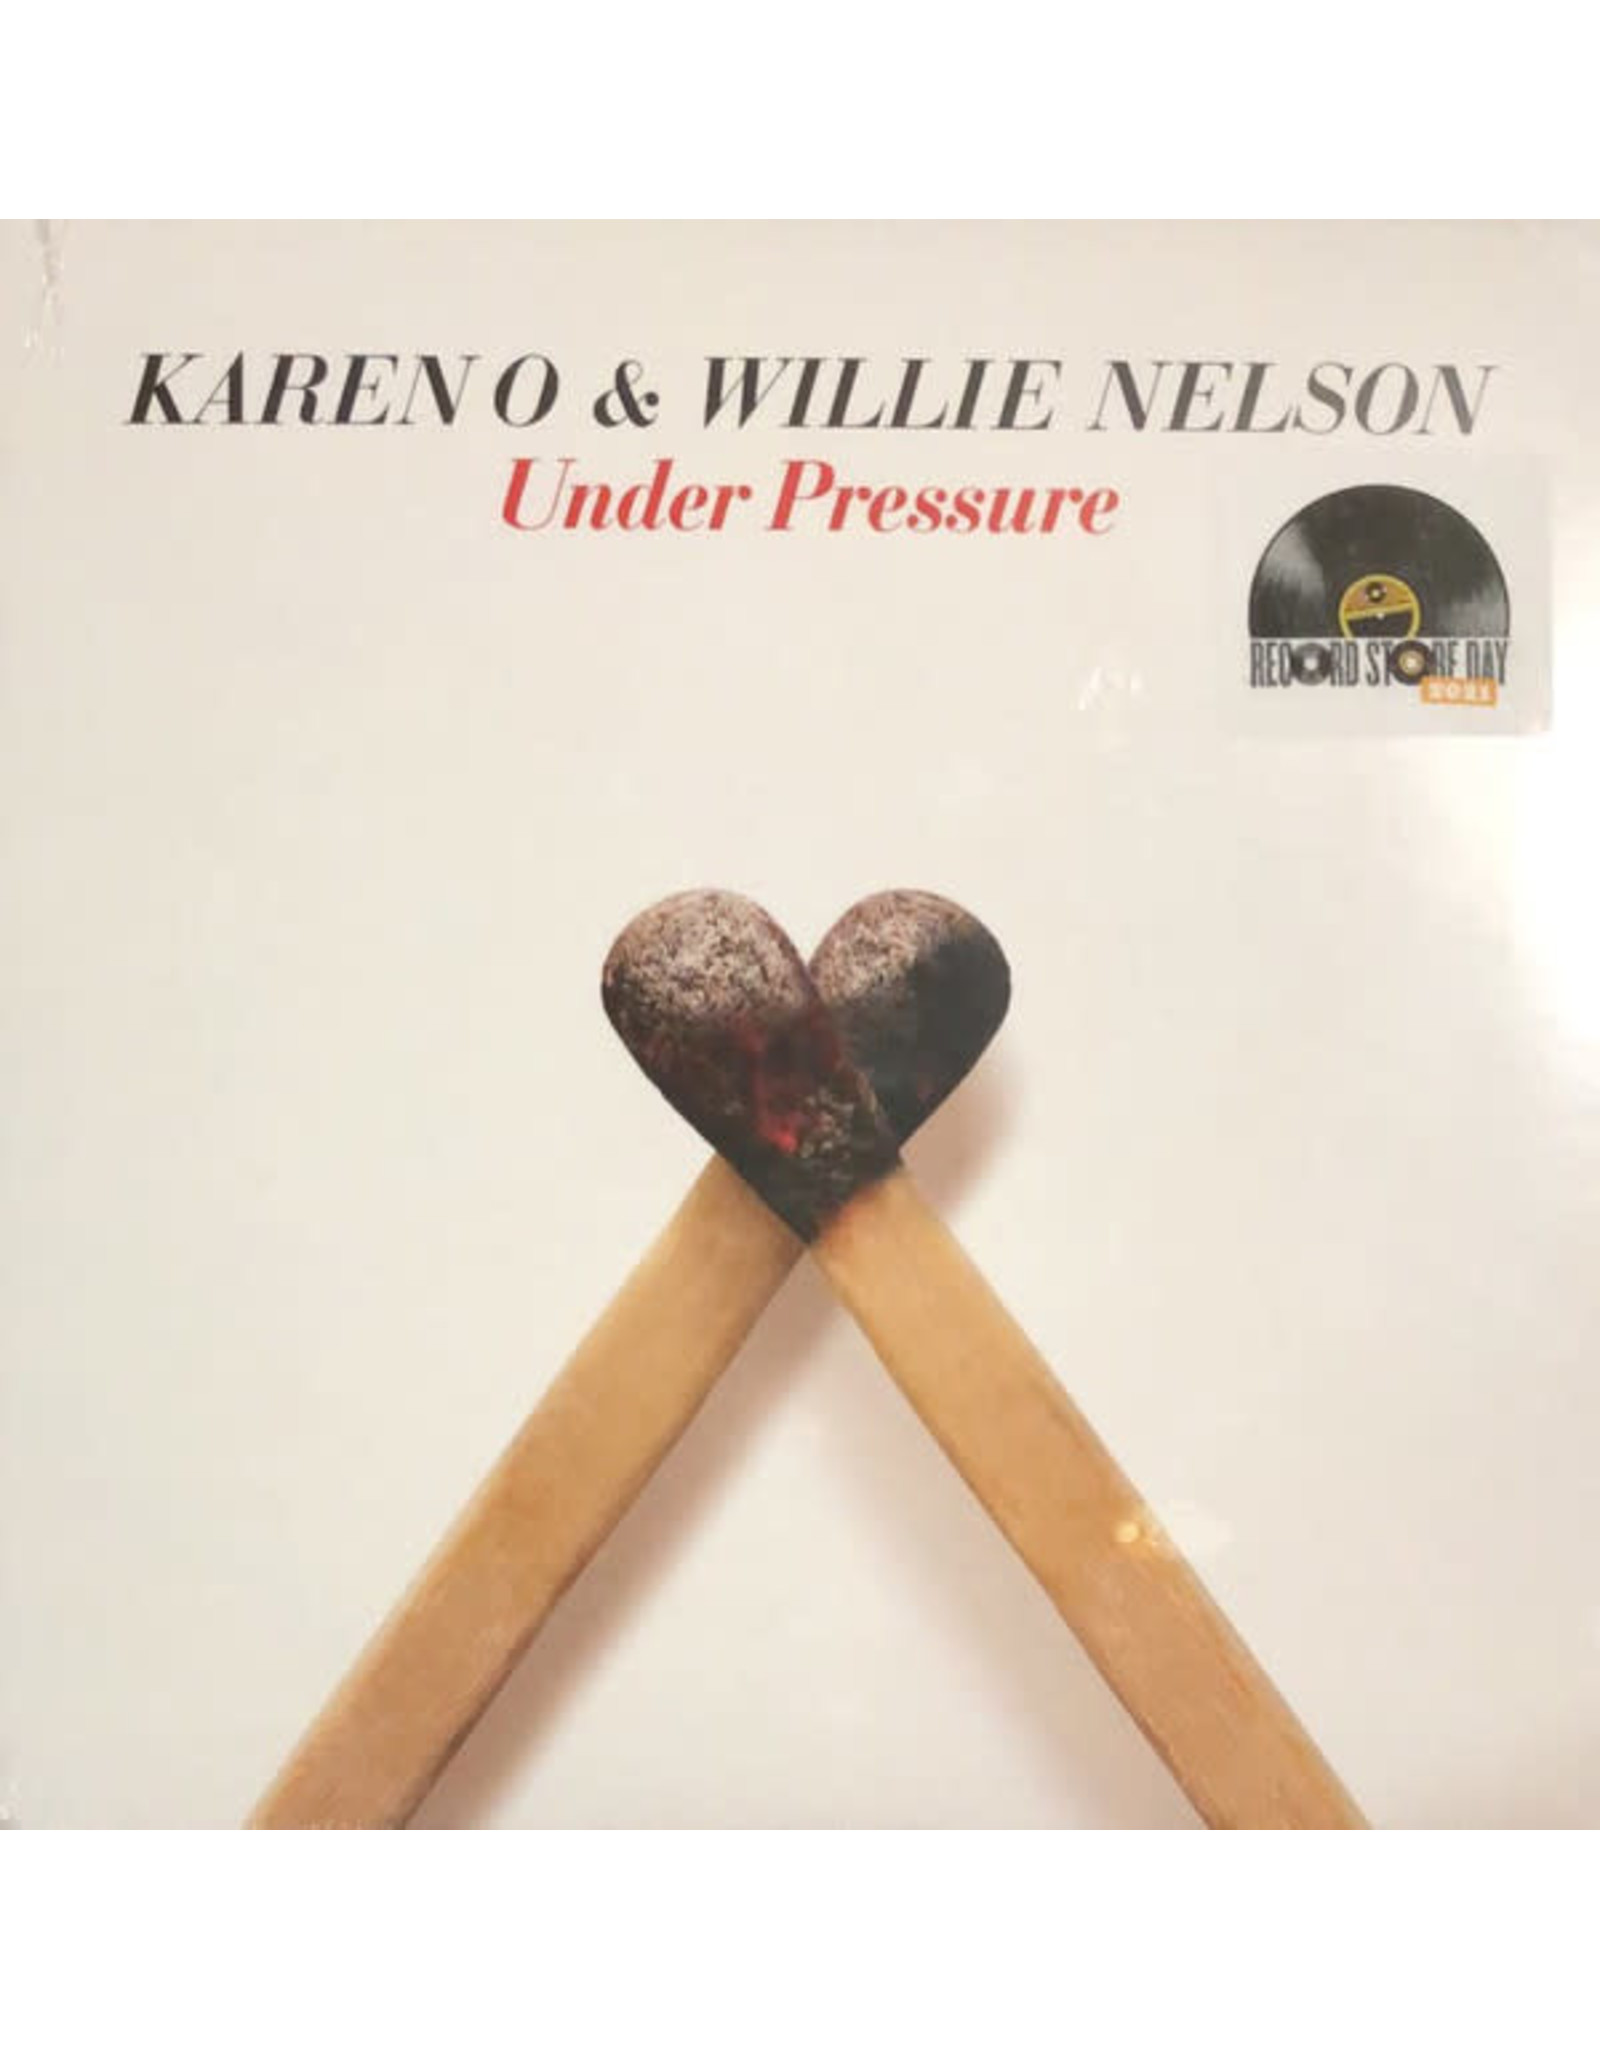 Karen O & Nelson, Willie - Under Pressure 7" (RSD)